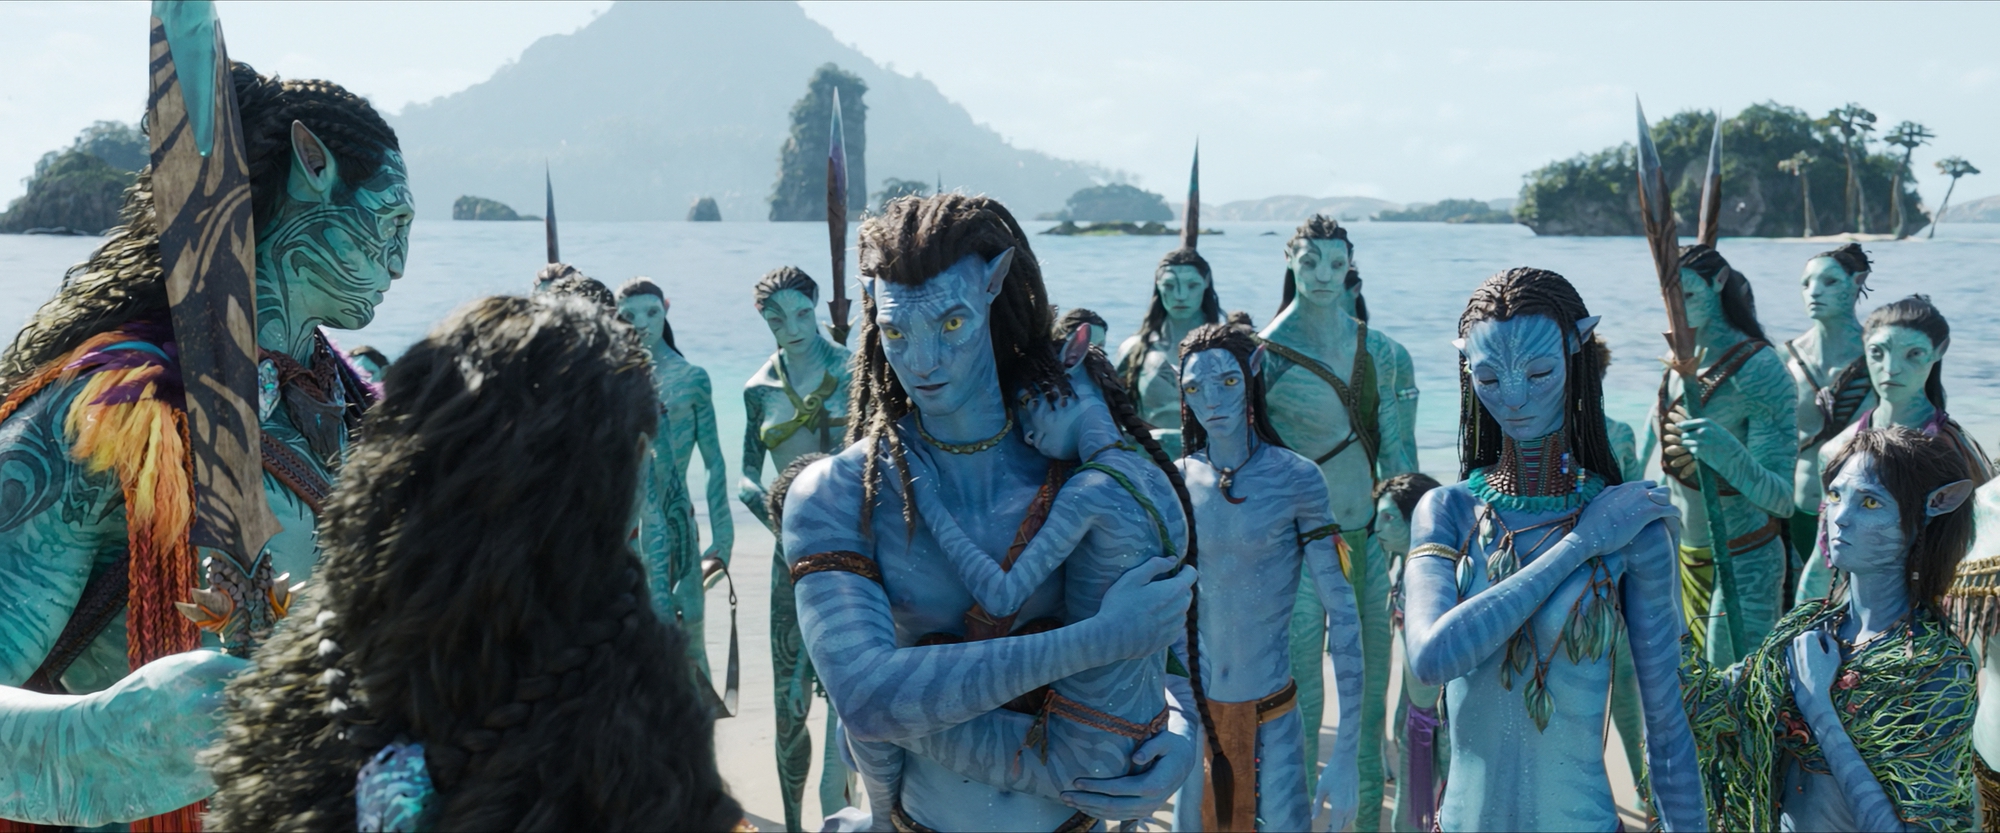 Avatar 2\' thu 434 triệu USD mở màn: Kỳ tích hay thất vọng?